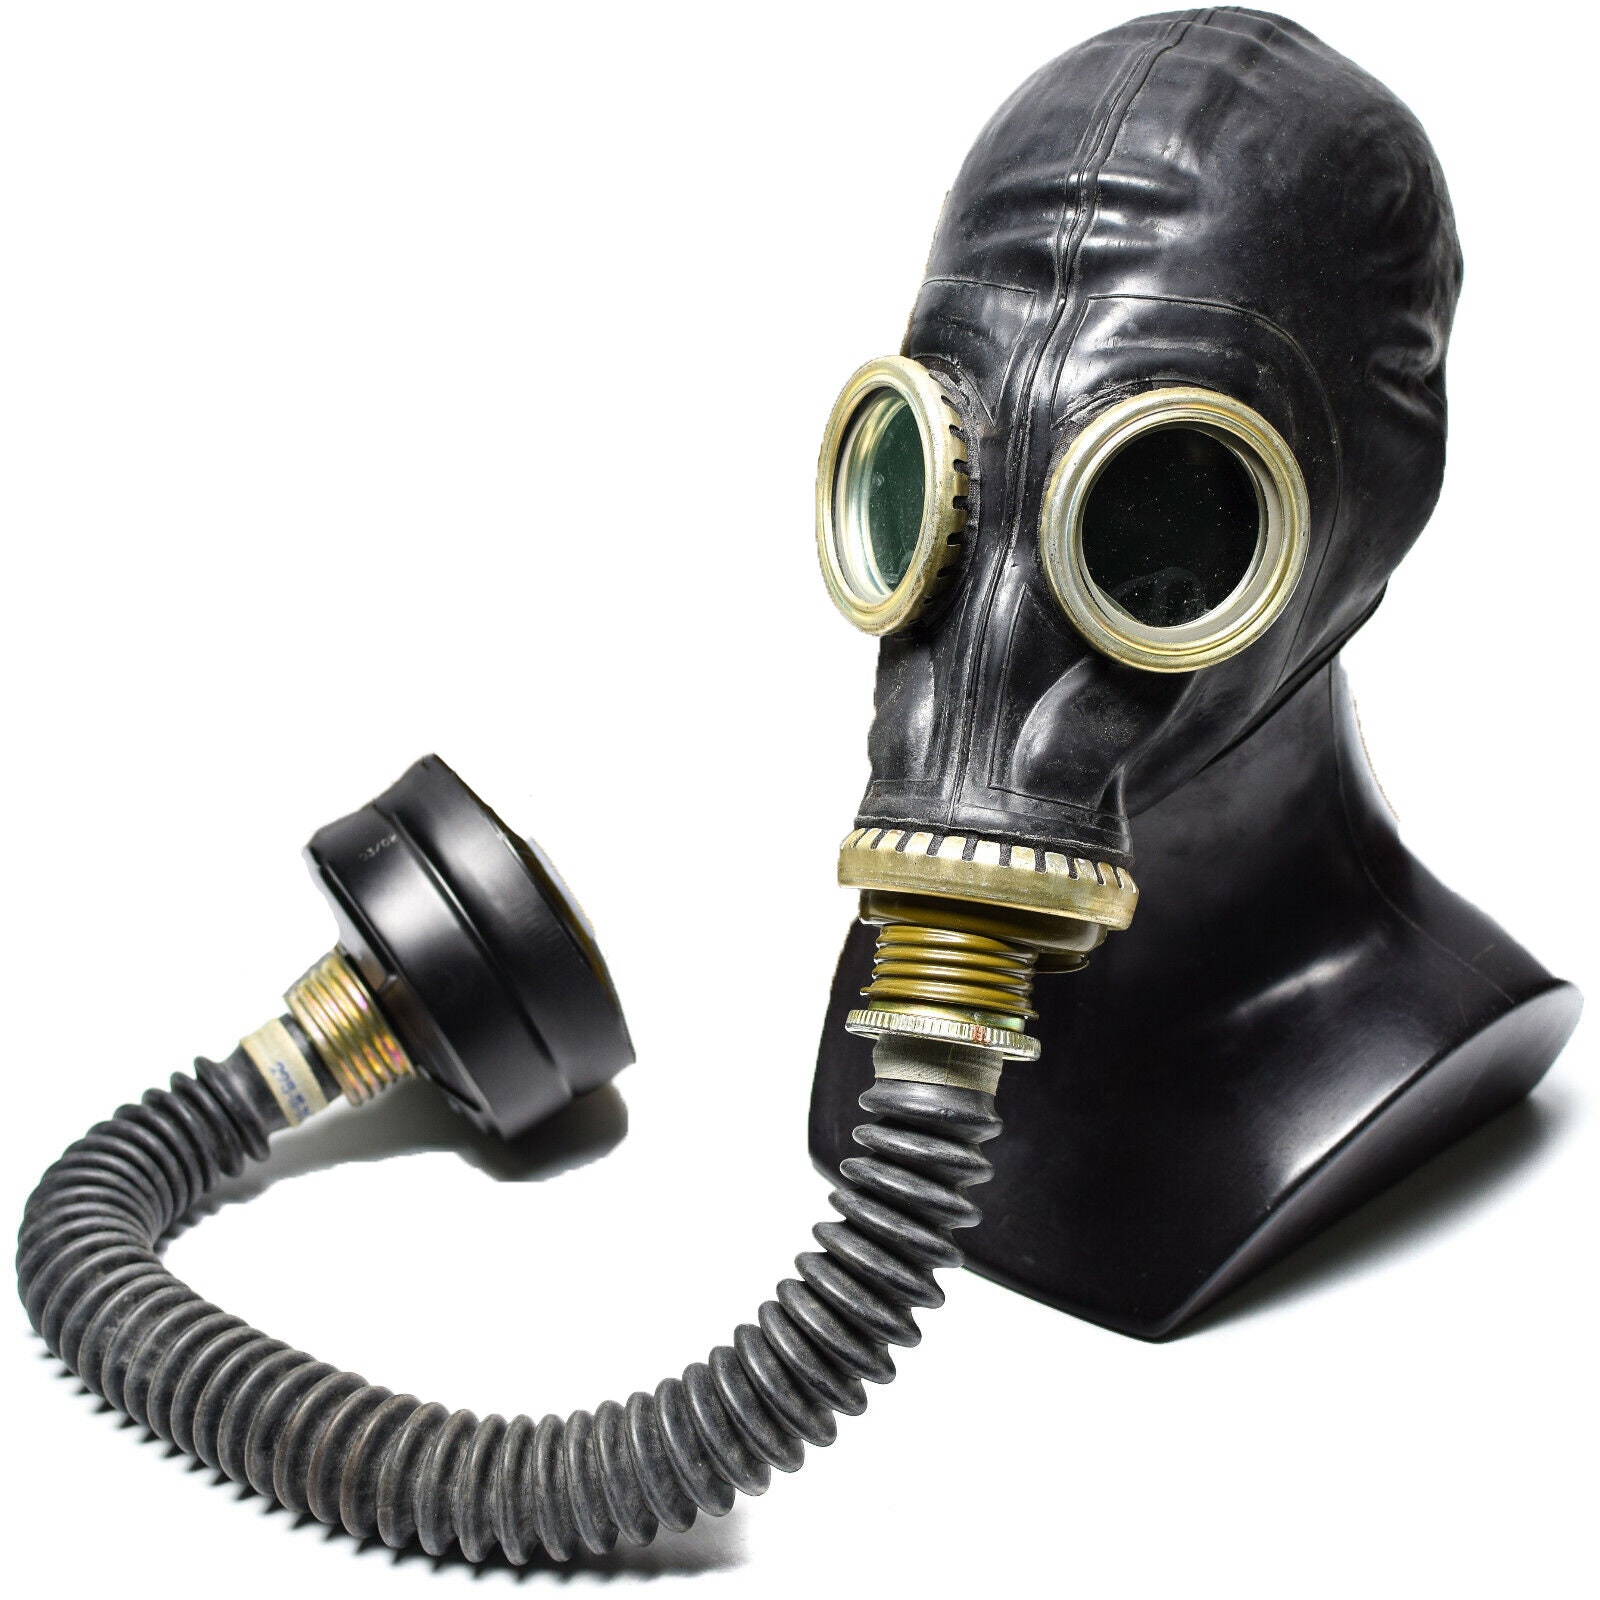 masque à gaz de danger en caoutchouc vintage sur le sol